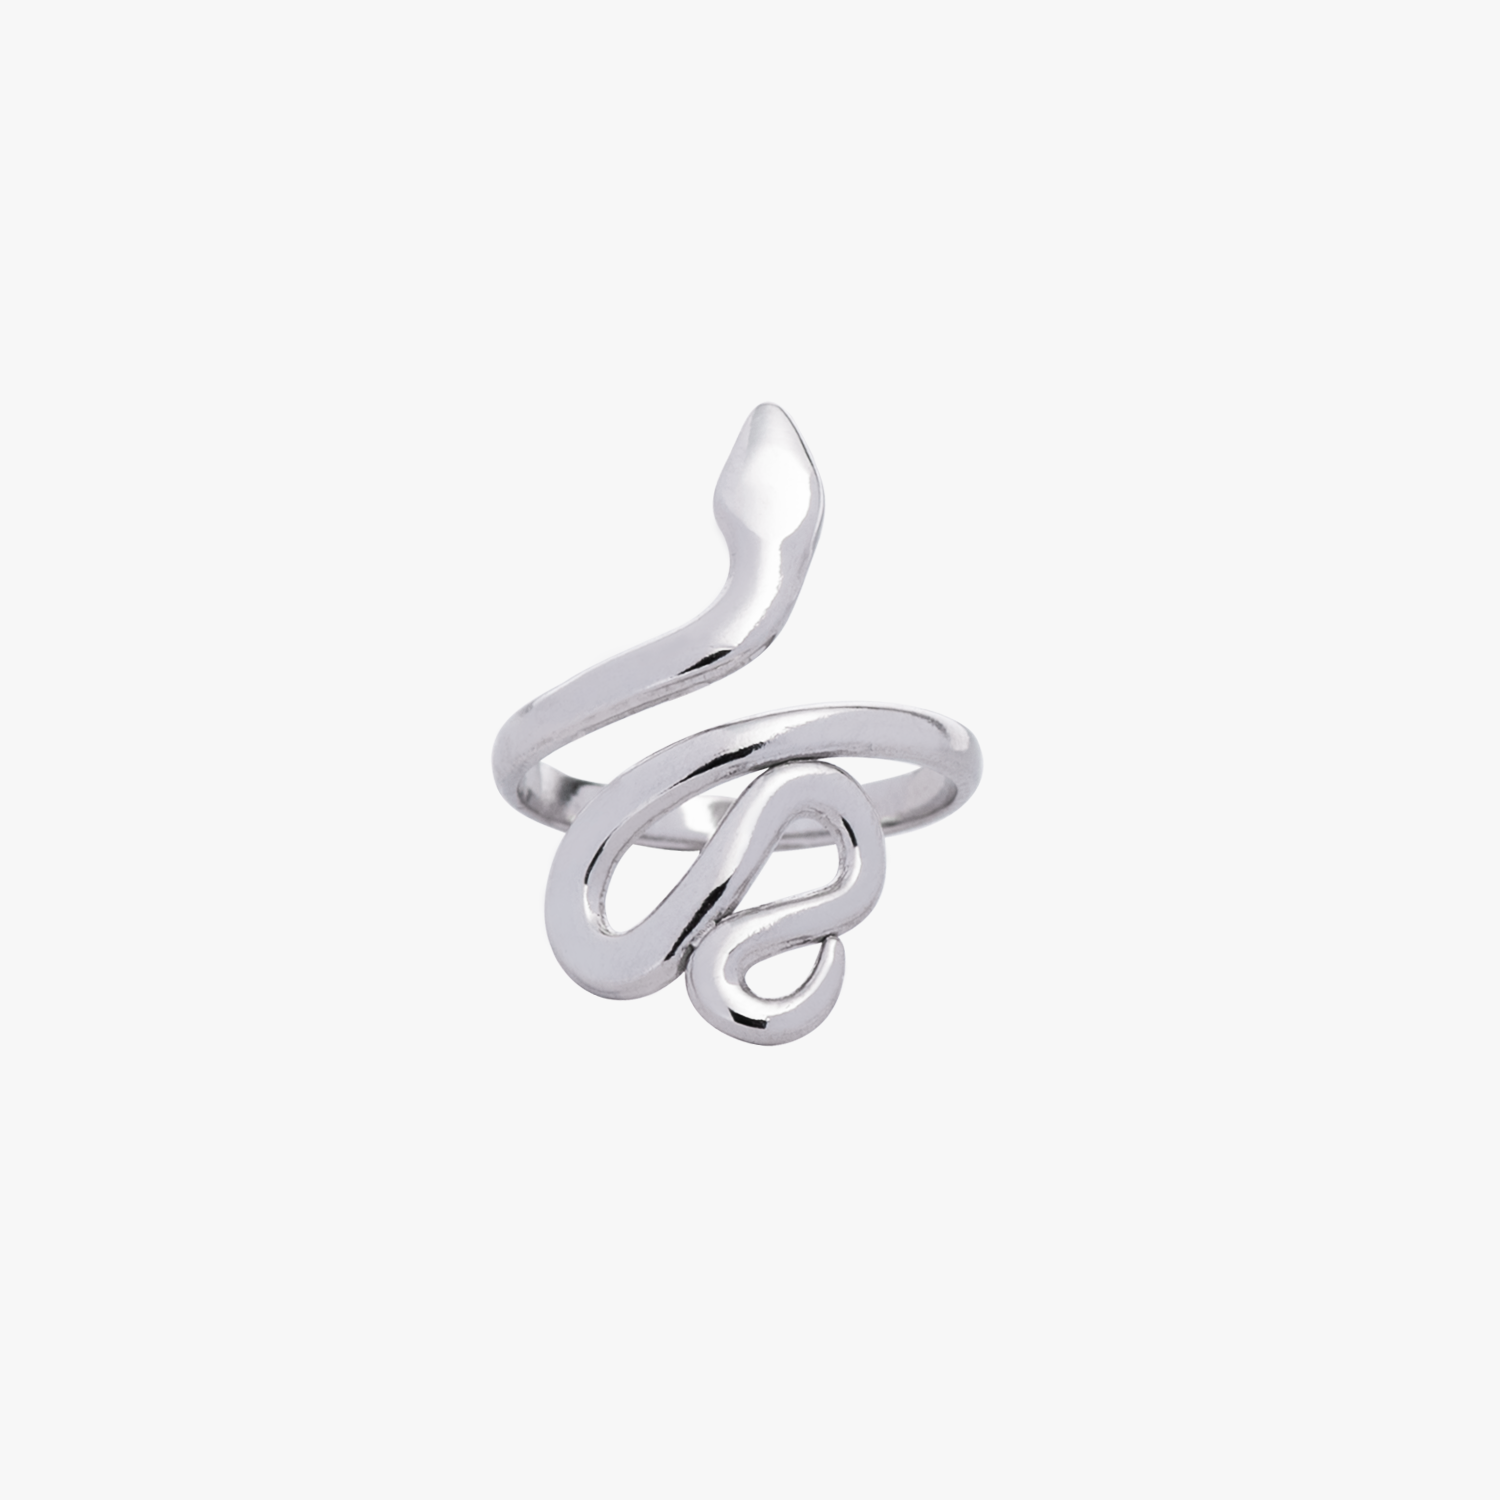 Produktfoto Ring "Snake" - Ringe im Shop von COPARIE.